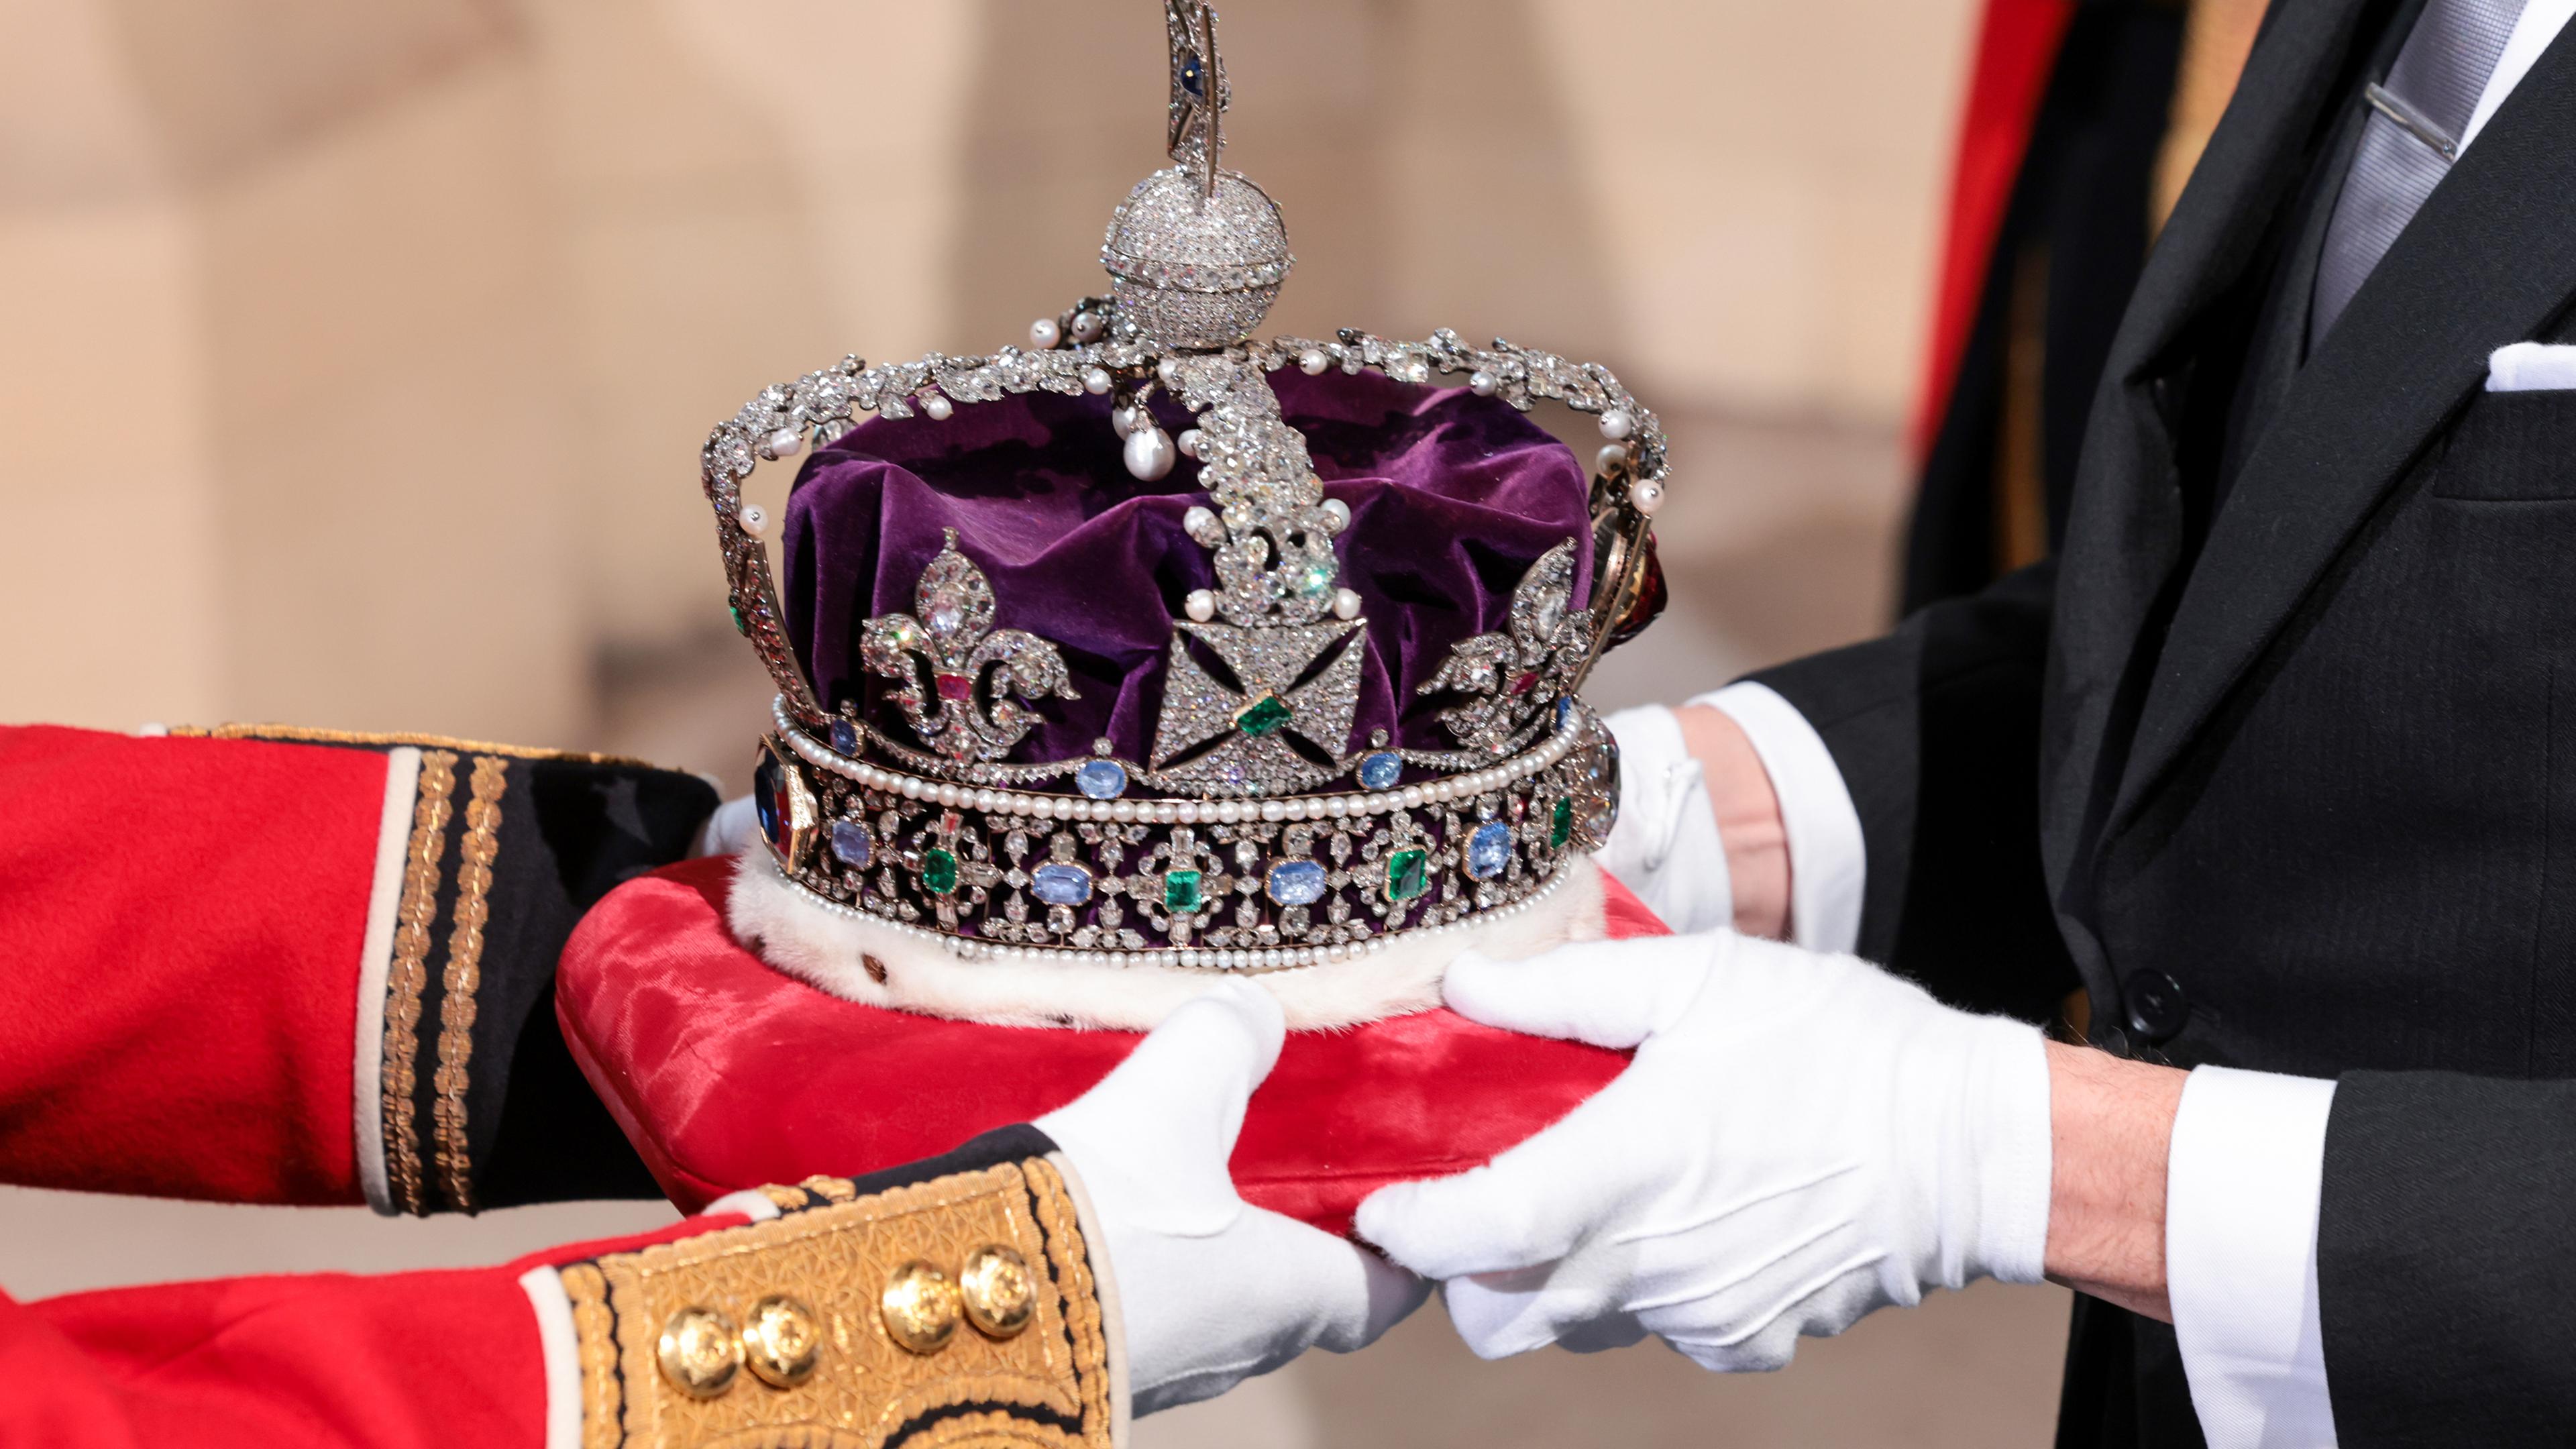 Großbritannien, London: Die Imperial State Crown